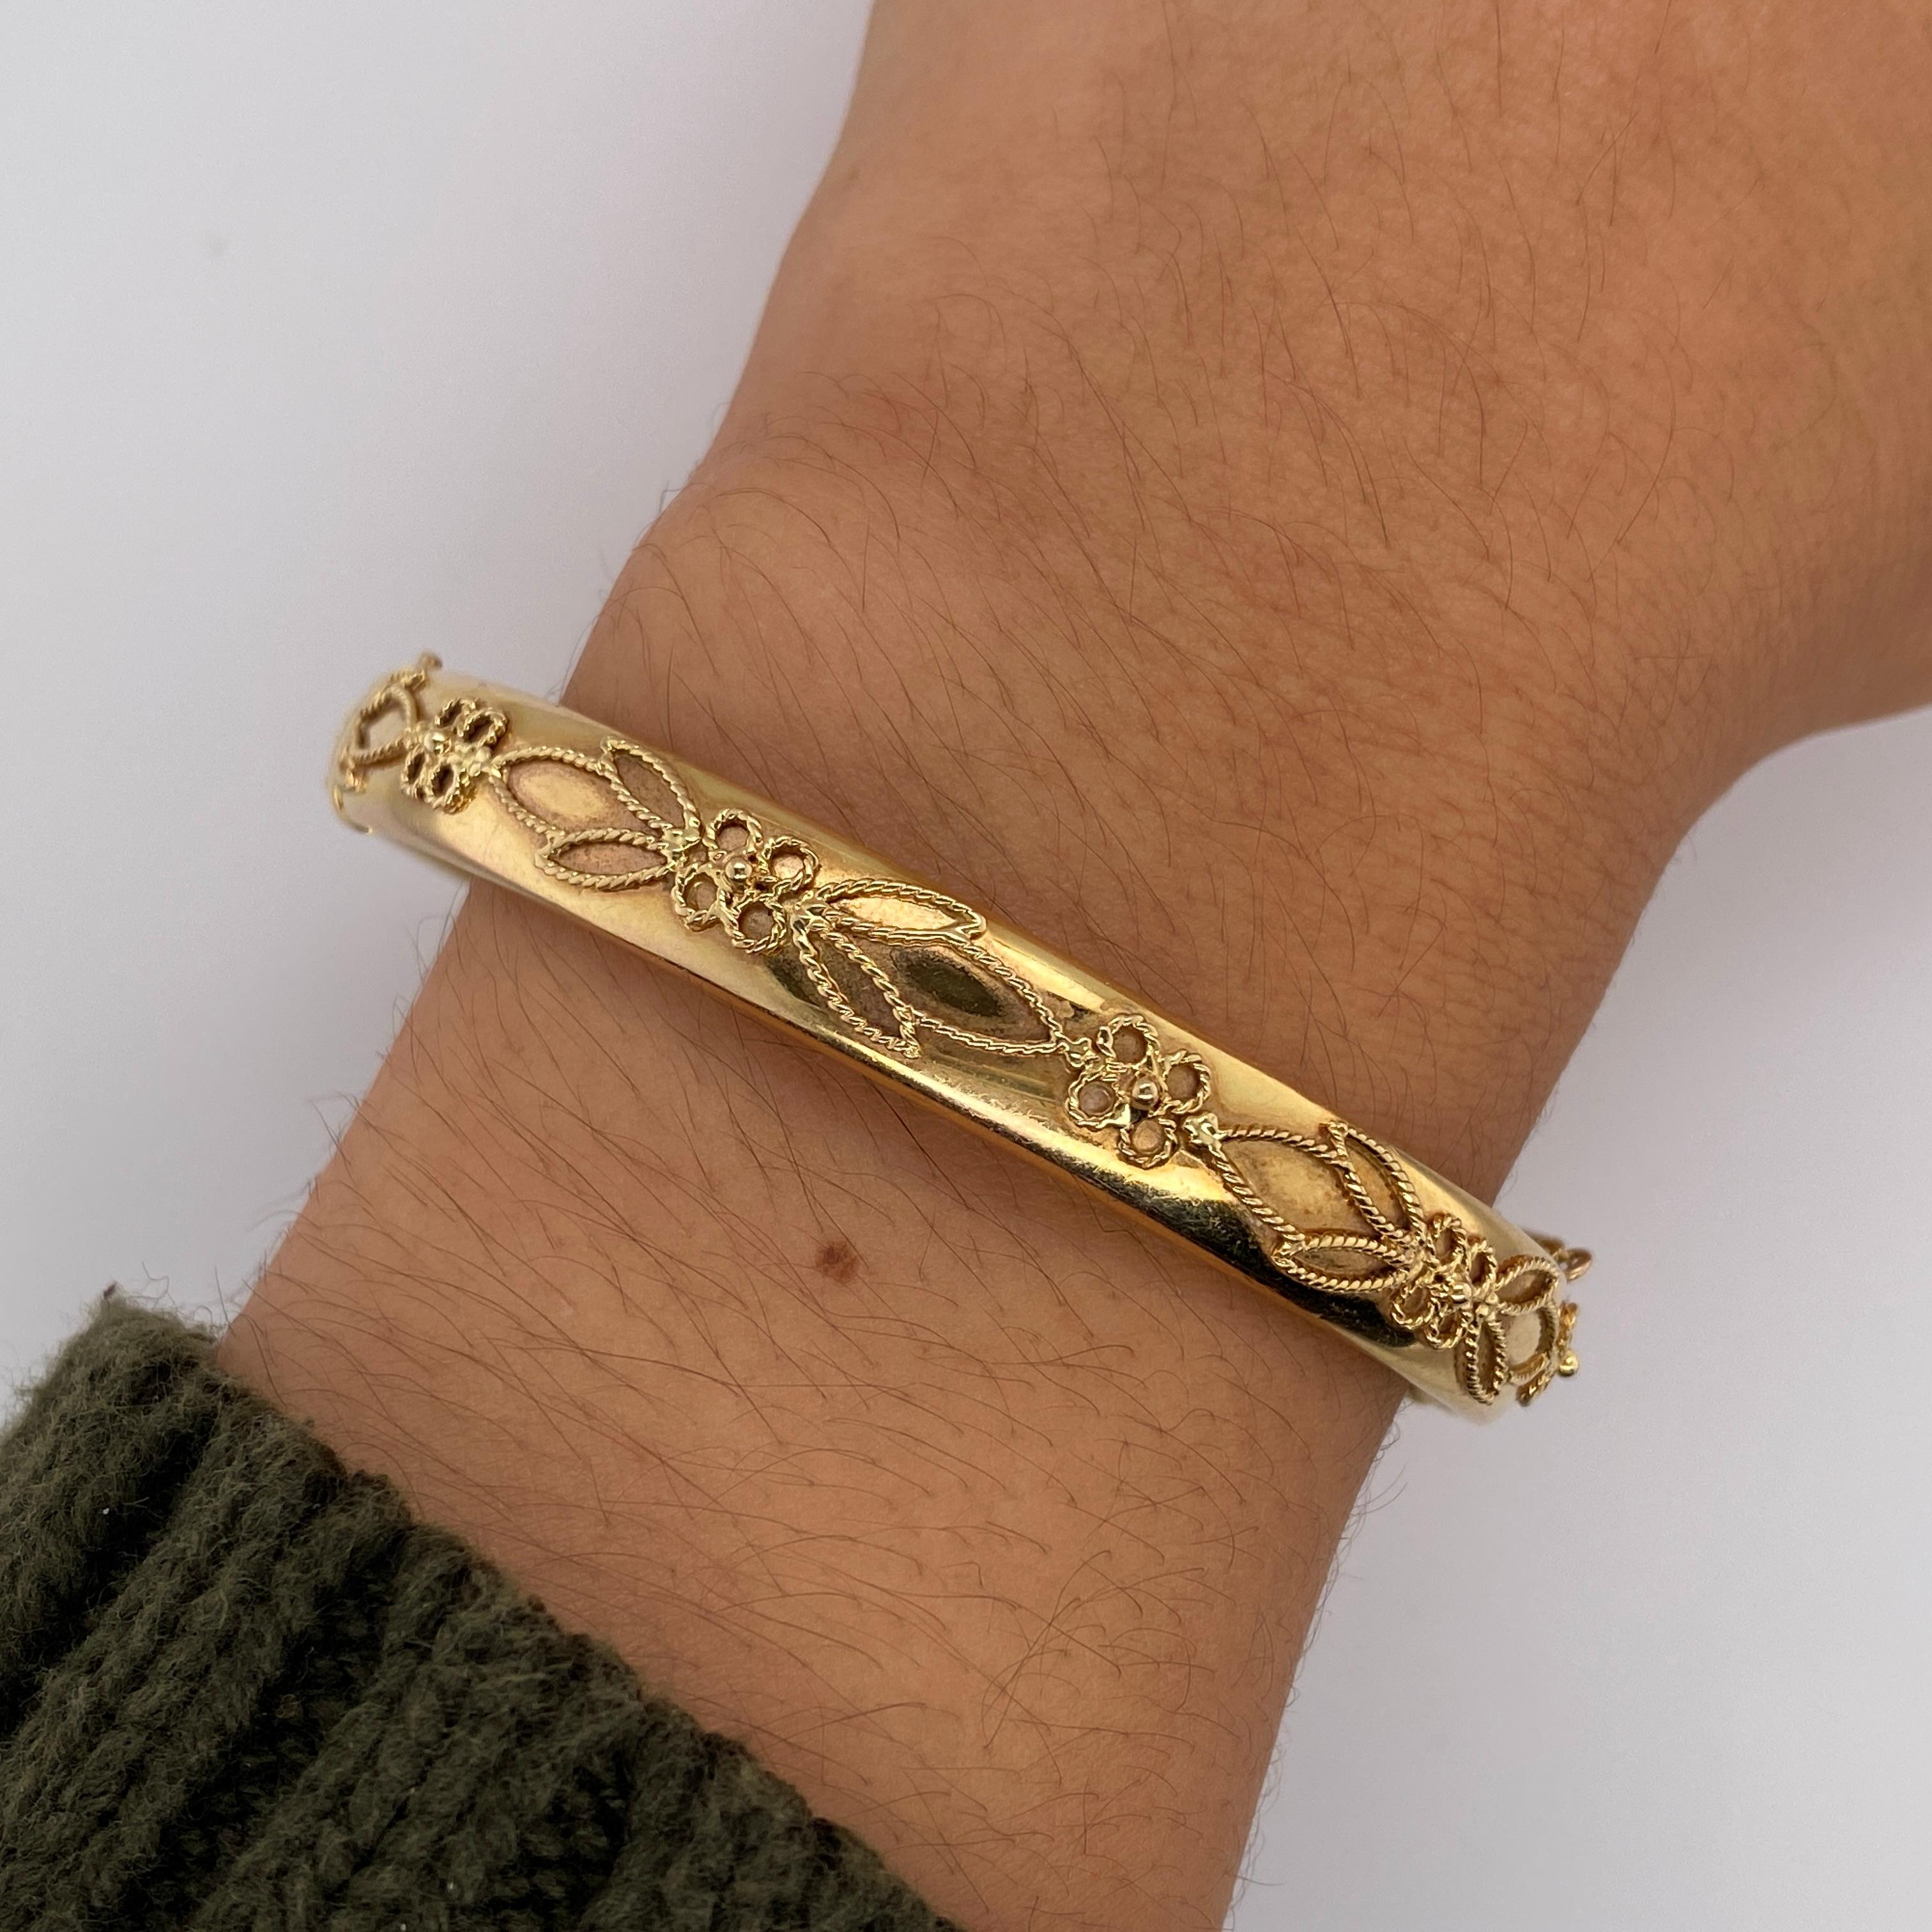 Dieses wunderschön erhaltene italienische Vintage-Armband ist aus 14 Karat Gelbgold gefertigt. Die sanft spiegelnde Oberfläche des Armbands ist mit einem Blatt- und Blumen- oder Kleemuster aus gedrehtem Draht verziert. Der Armreif mit Scharnier ist